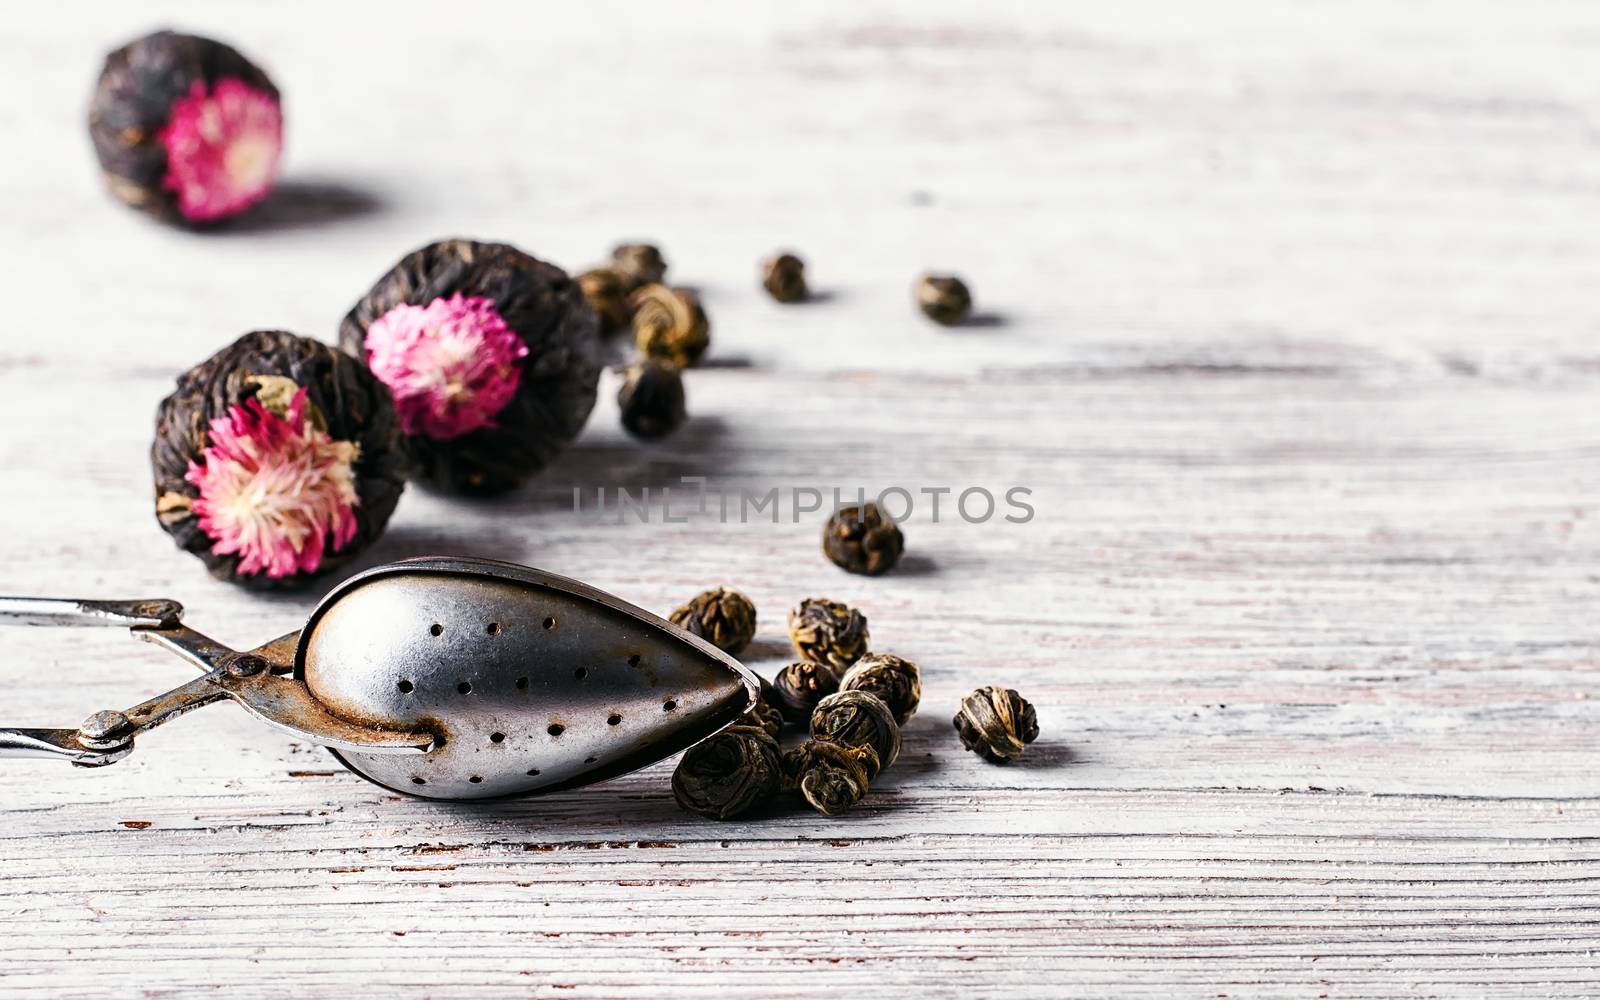 Flavored blooming tea by LMykola